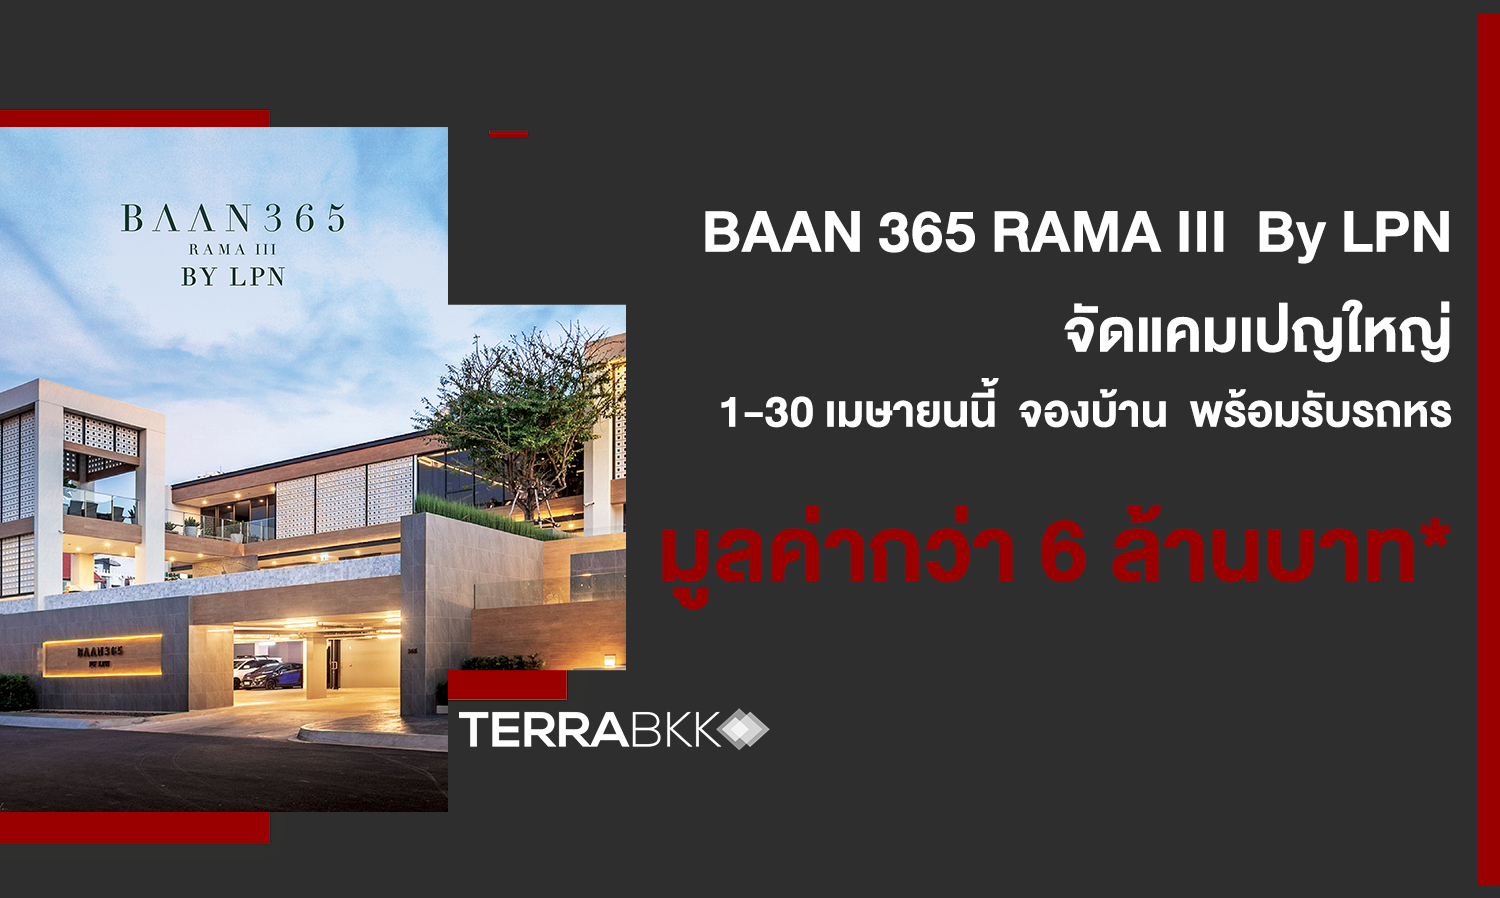 BAAN 365 RAMA III  By LPN จัดแคมเปญใหญ่ พร้อมมอบข้อเสนอสุดเอ็กคลูซีฟแห่งปี 